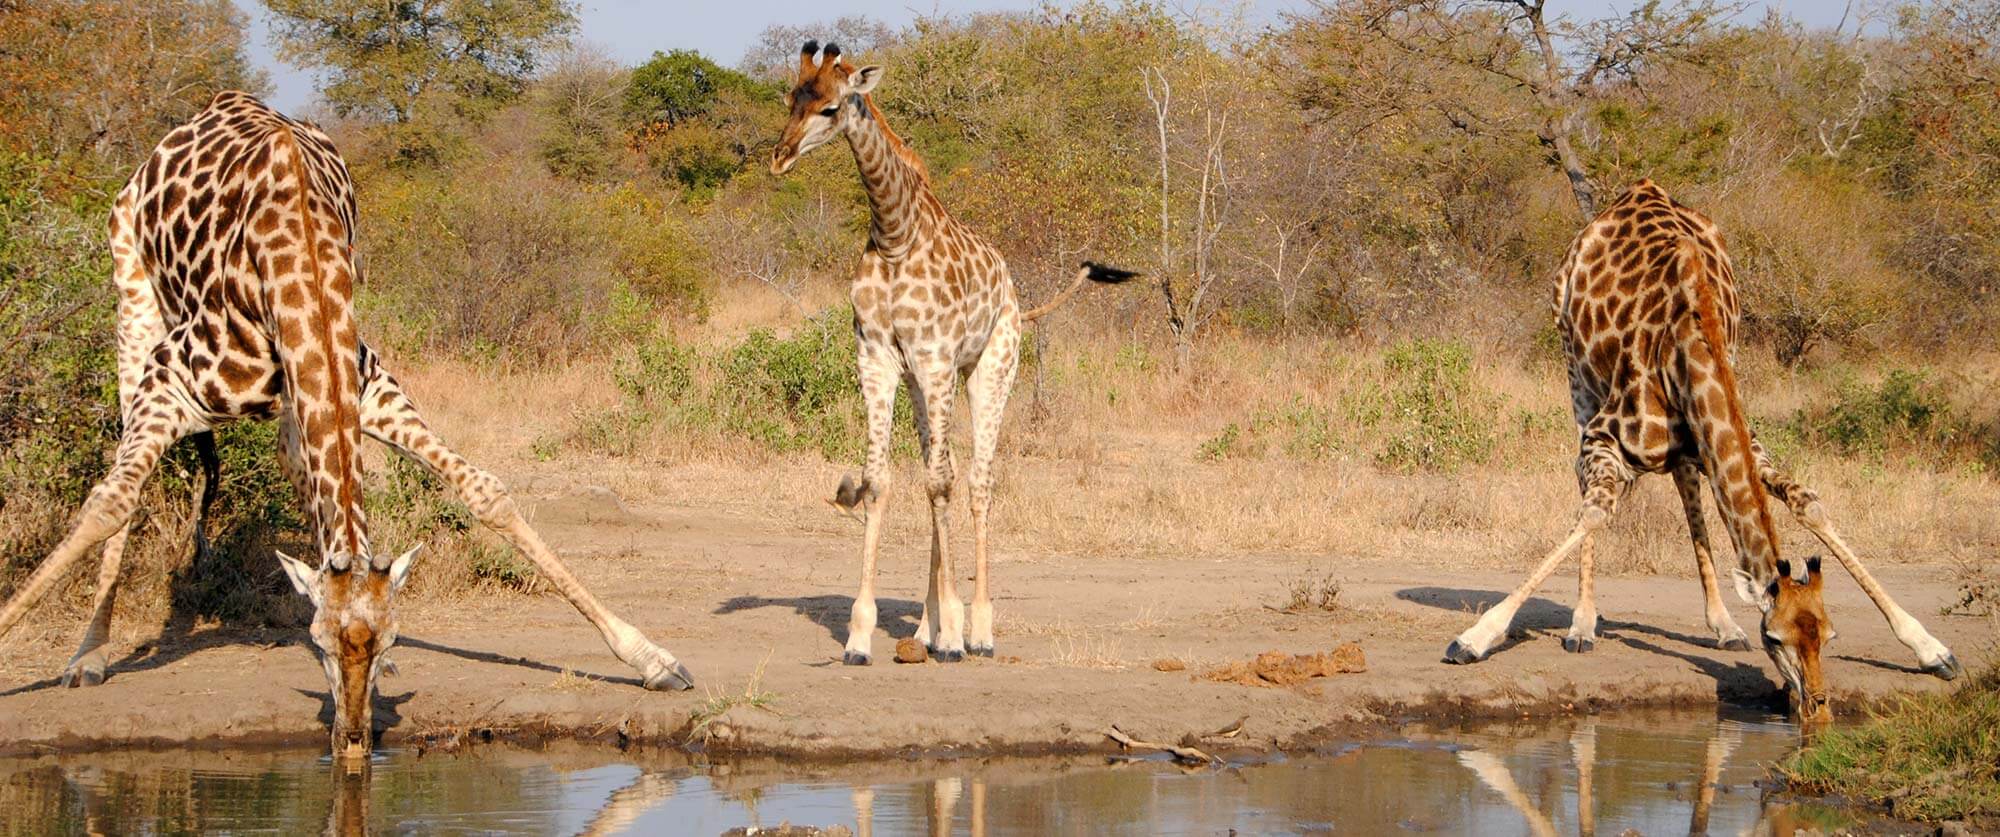 Giraffes on Safari at N'kaya Game Lodge - Kruger Safari, City, and Winelands Vacation